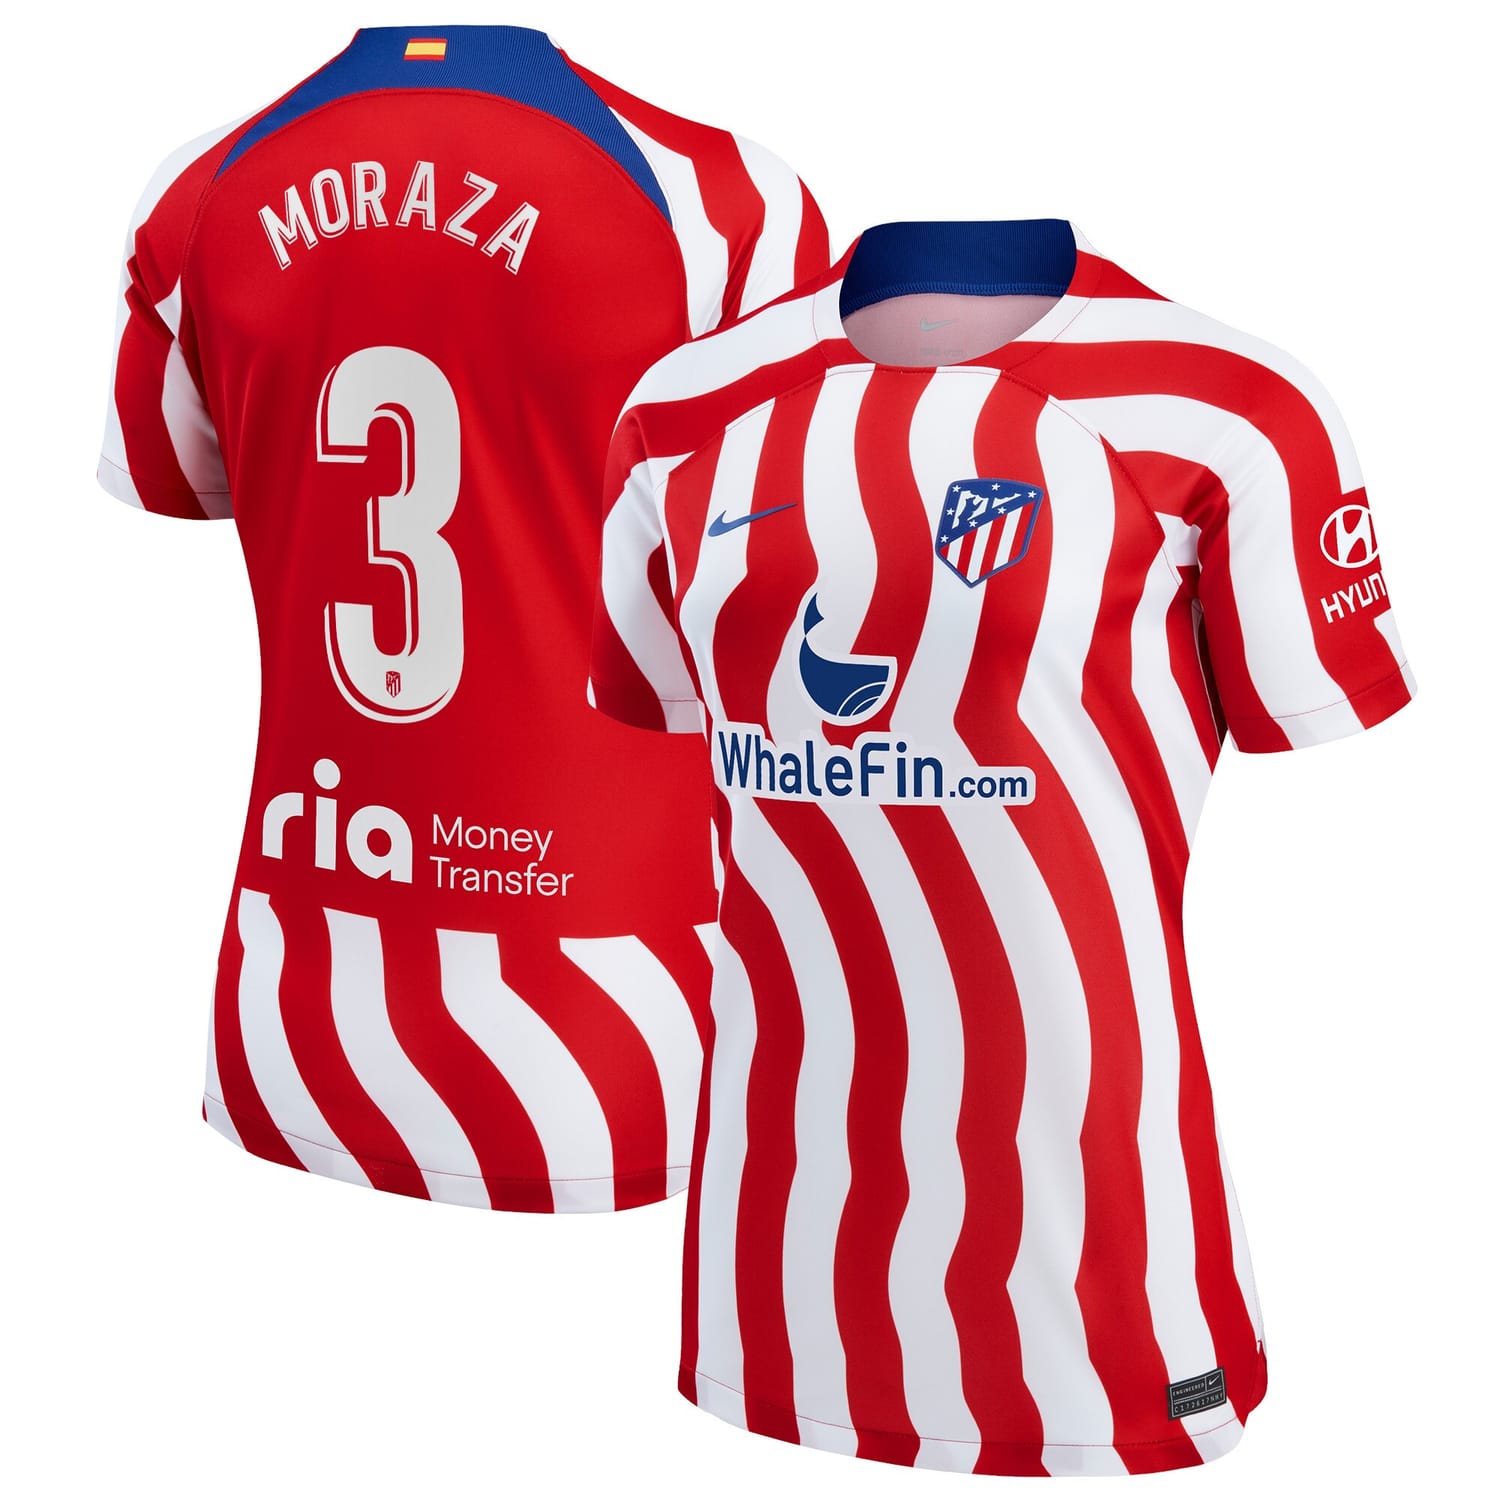 La Liga Atletico de Madrid Home Jersey Shirt 2022-23 player Ainhoa Vicente Moraza 3 printing for Women